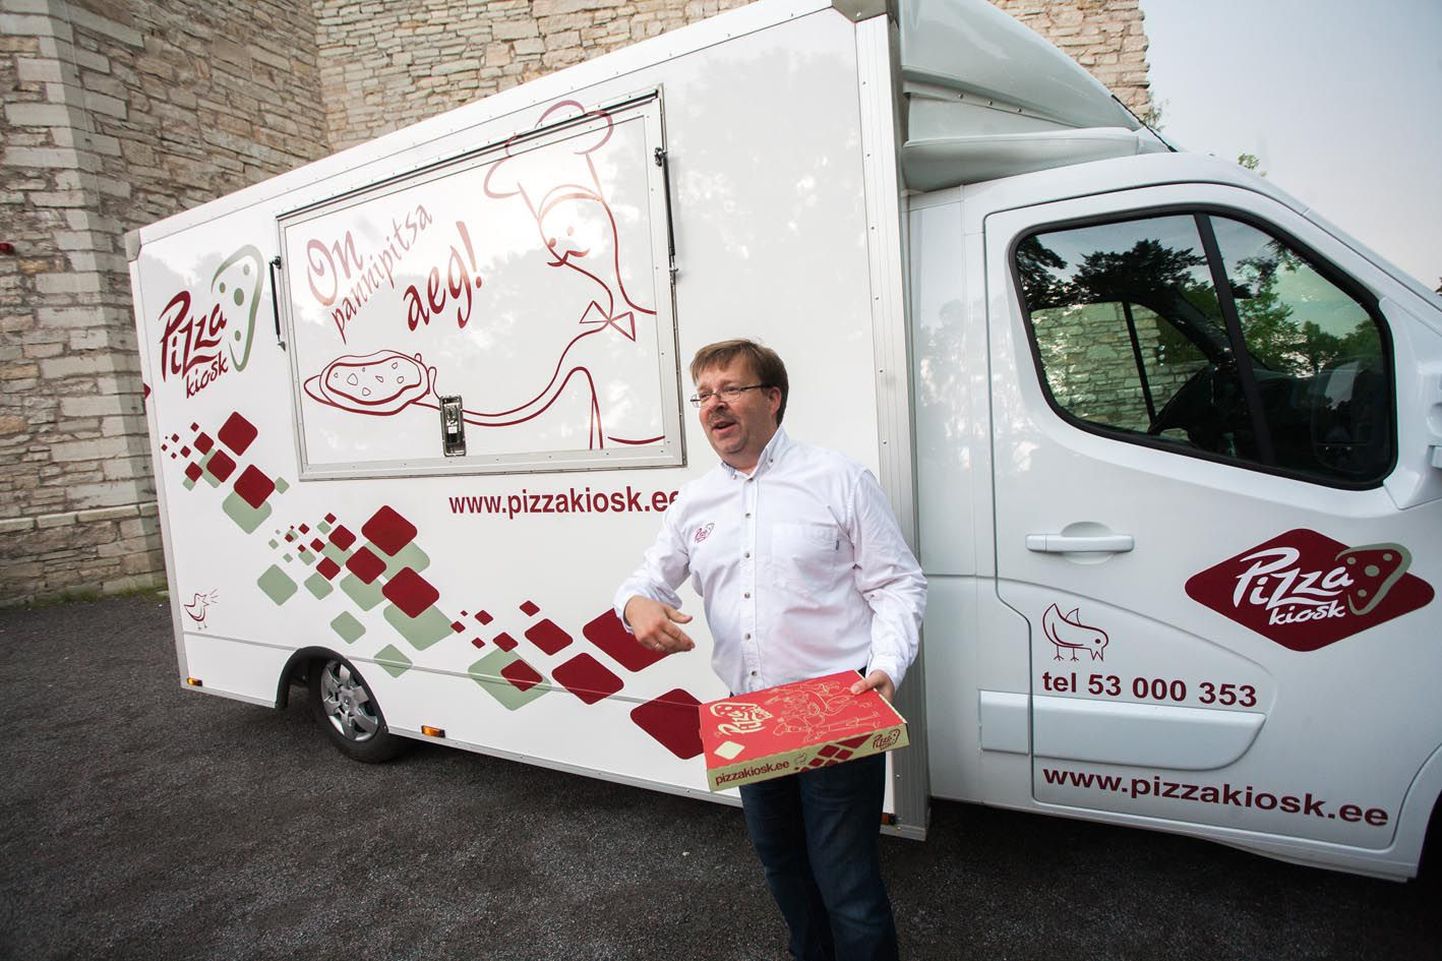 Pizzakioski omanik Kurre Ehrnsten on pitsakultuuri edenduseks soetanud isegi auto, milles on kõik seadmed toidu valmistamiseks.